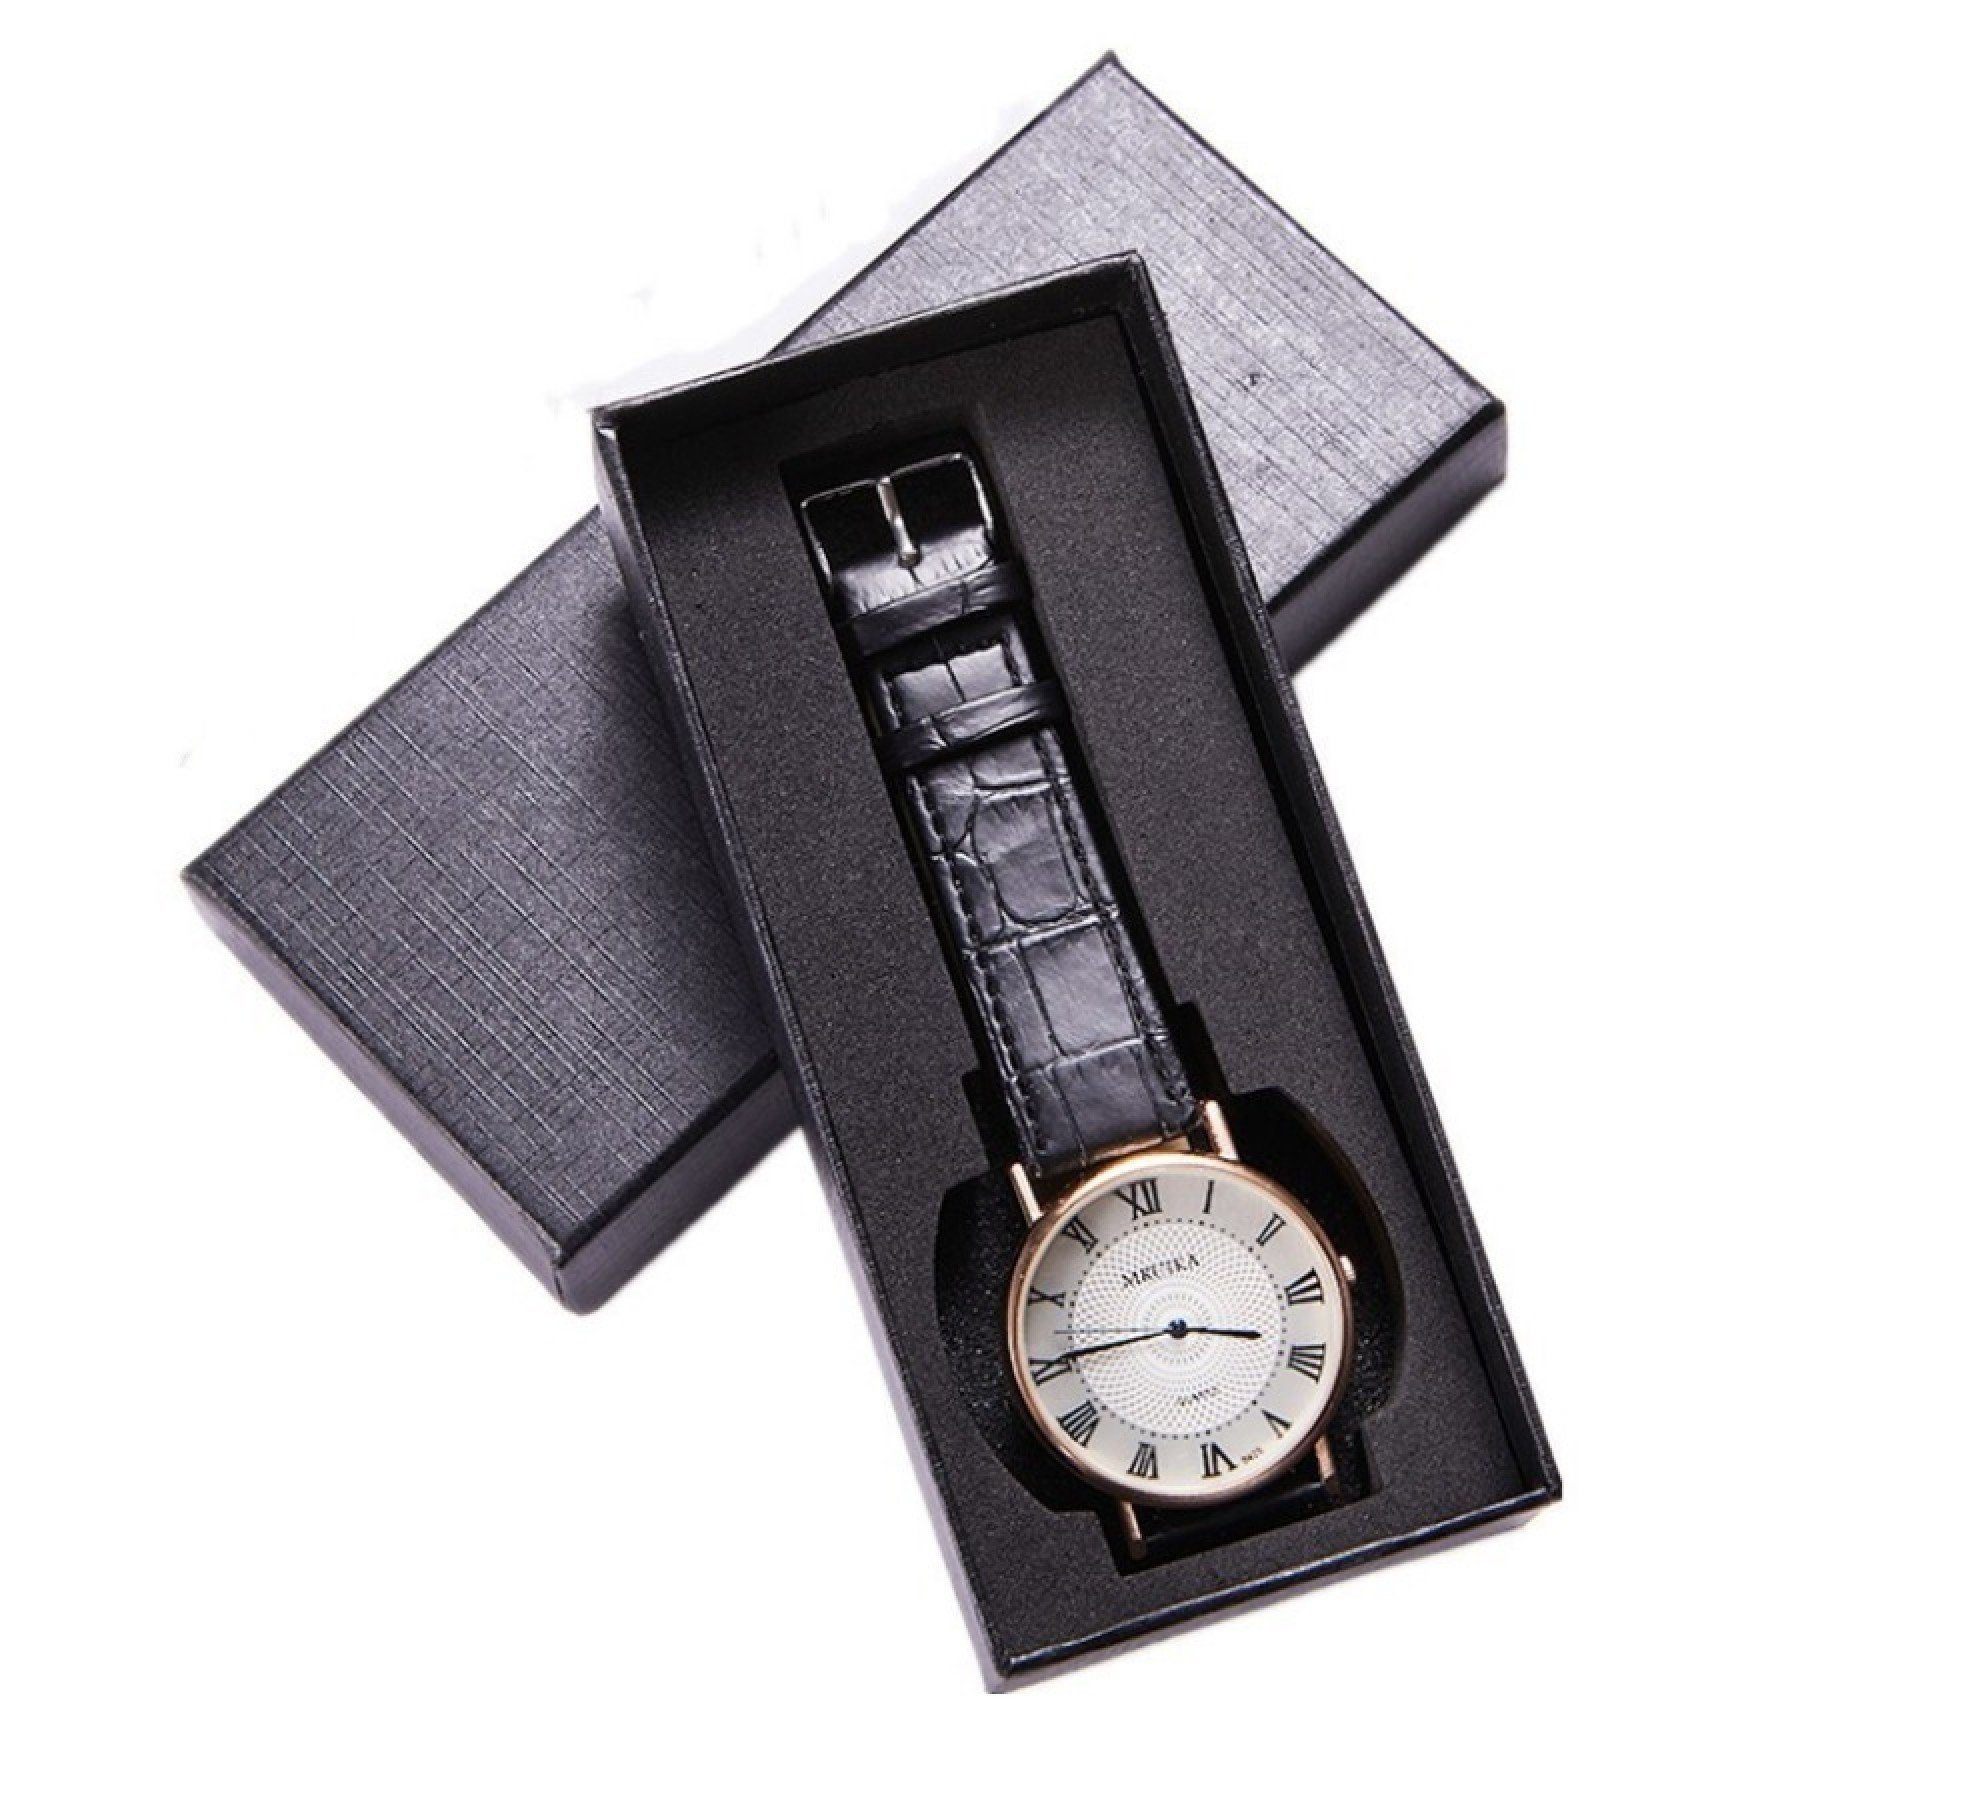 BAYLI Schmucketui Geschenk Uhrenbox für 1 Uhr, 145 x 65 mm Uhrenkarton in Schwarz, Gesch